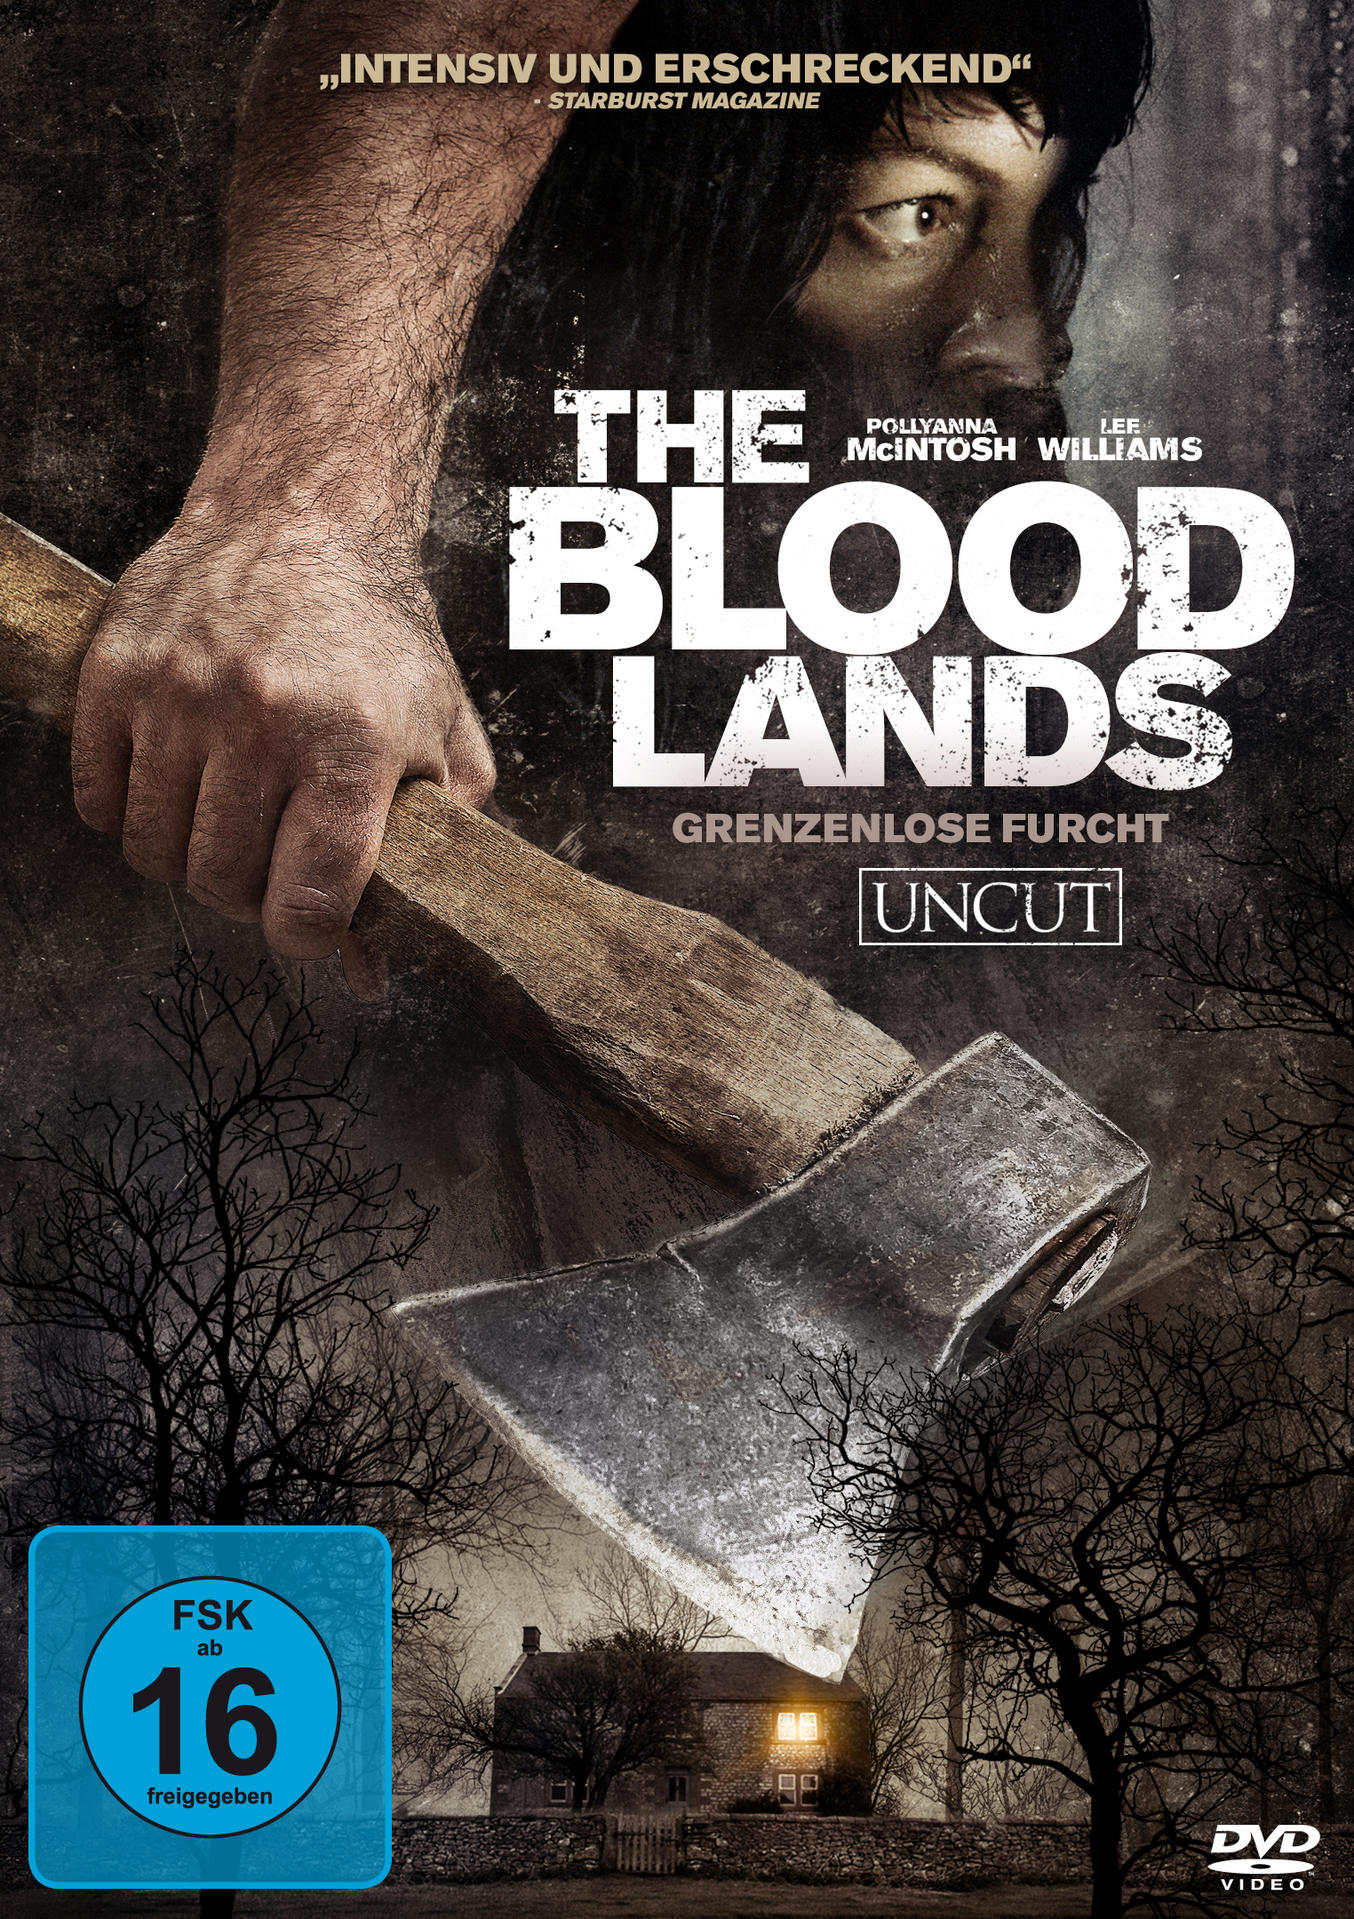 Furcht DVD Lands-Grenzenlose The Blood